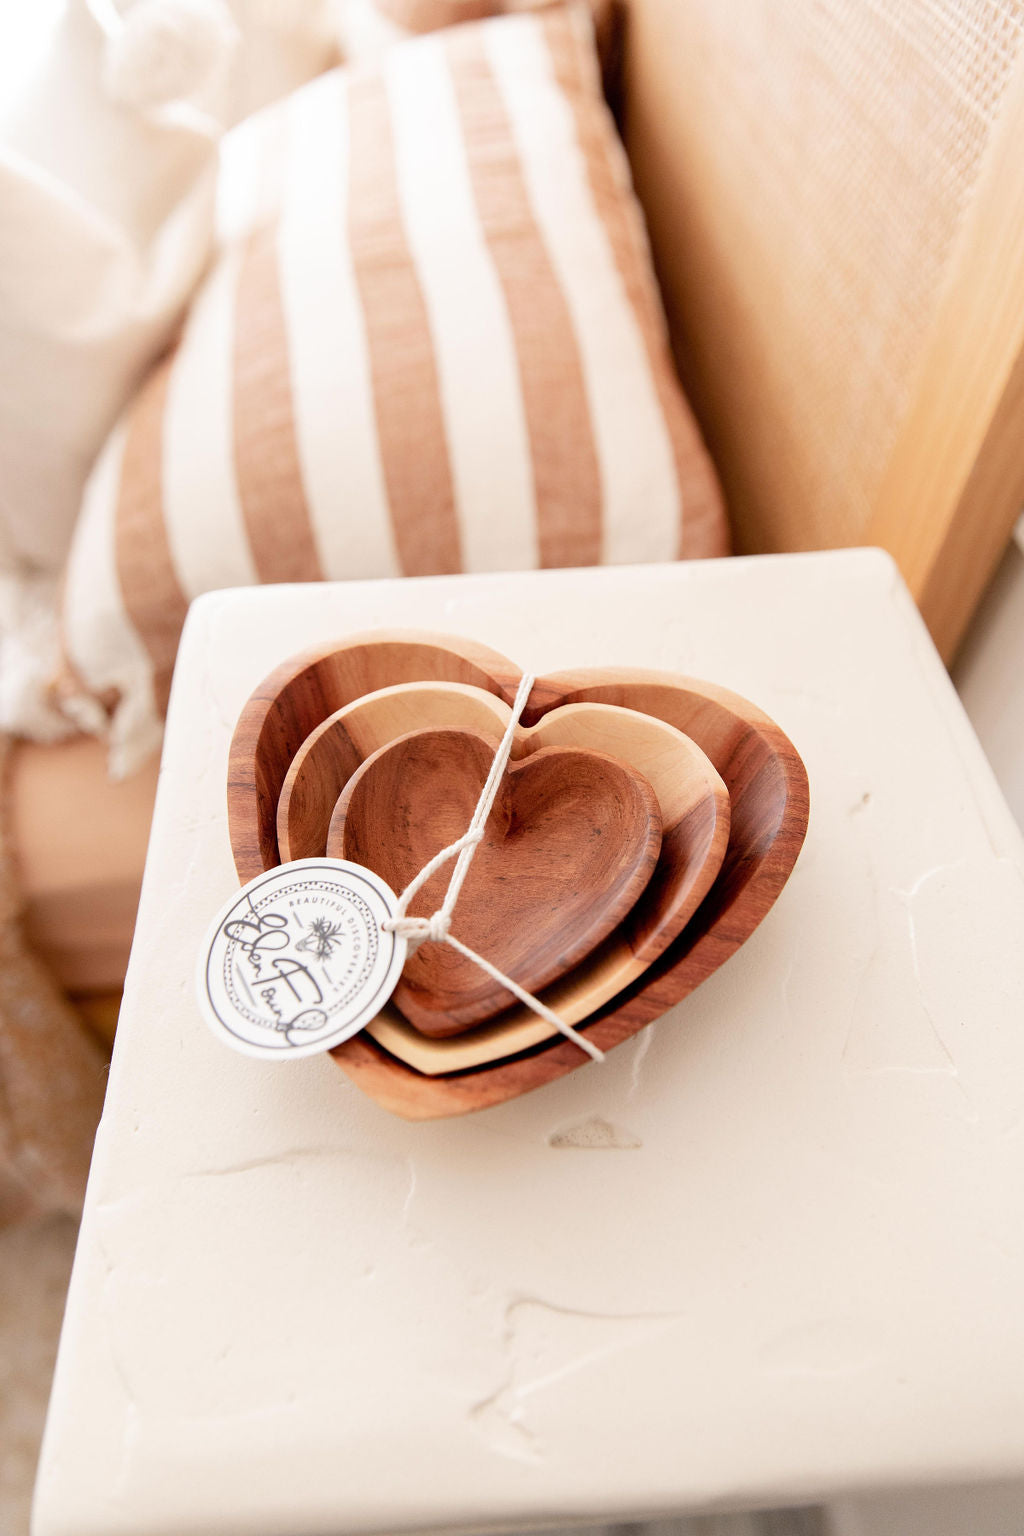 Grateful Heart Nestled Bowls - Set of 3